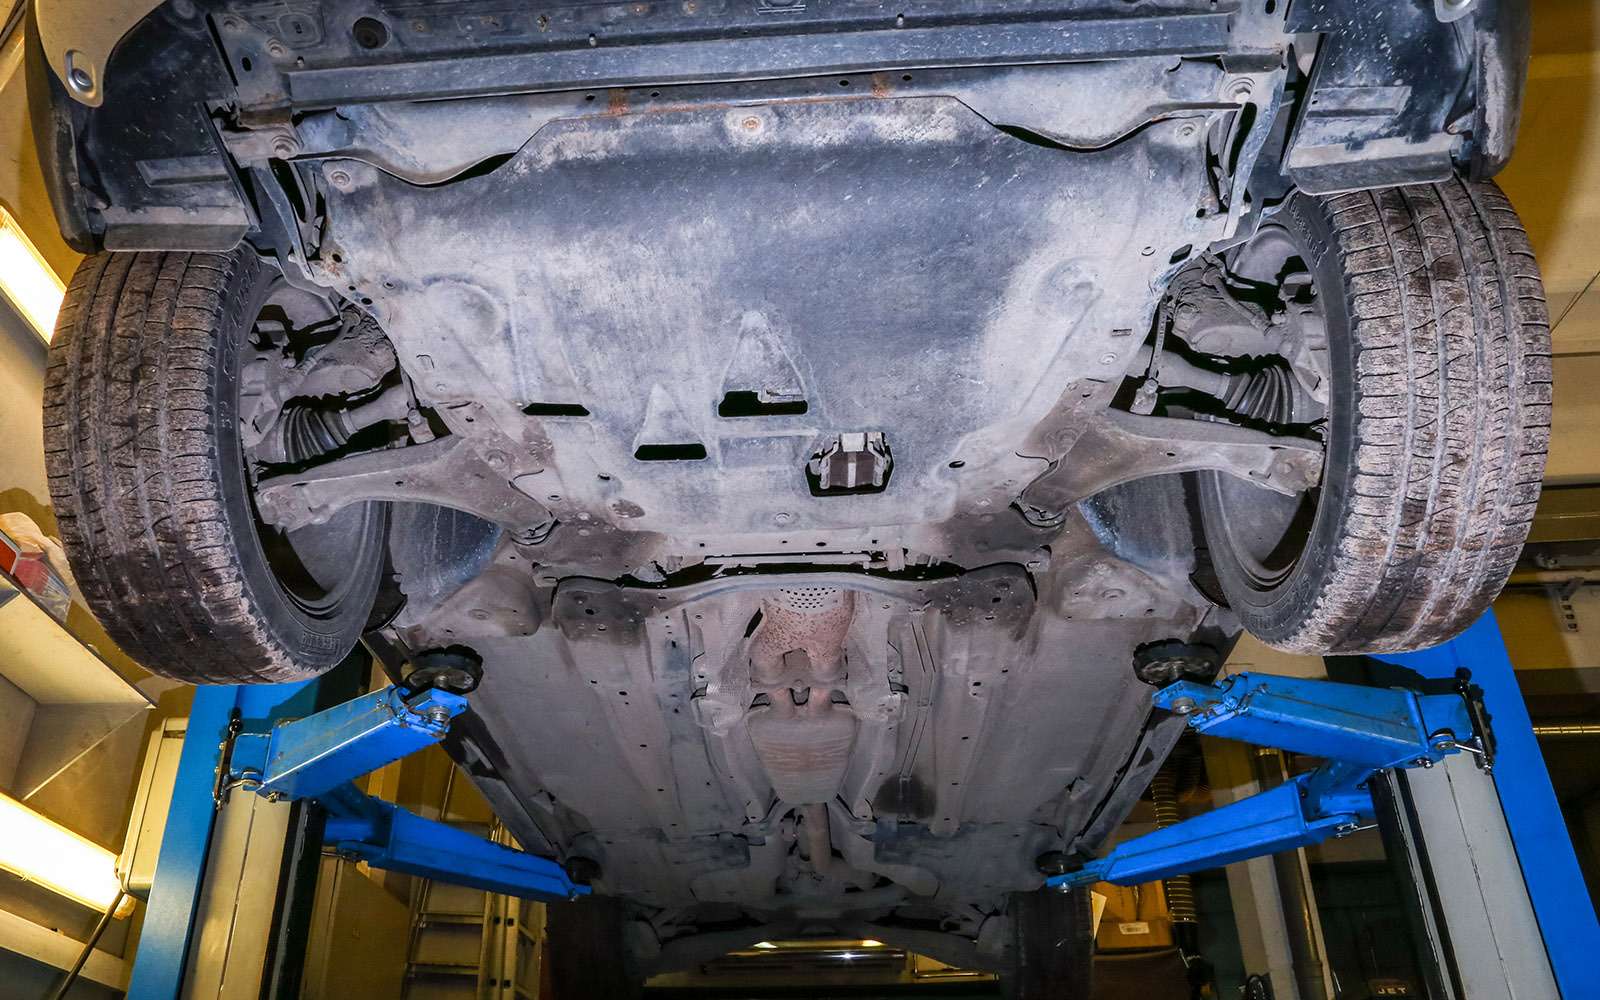 Volvo XC70: Моторный отсек прикрыт пластиковым щитком. Днище плоское. Несмотря на годы, здесь нет даже намека на ржавчину.